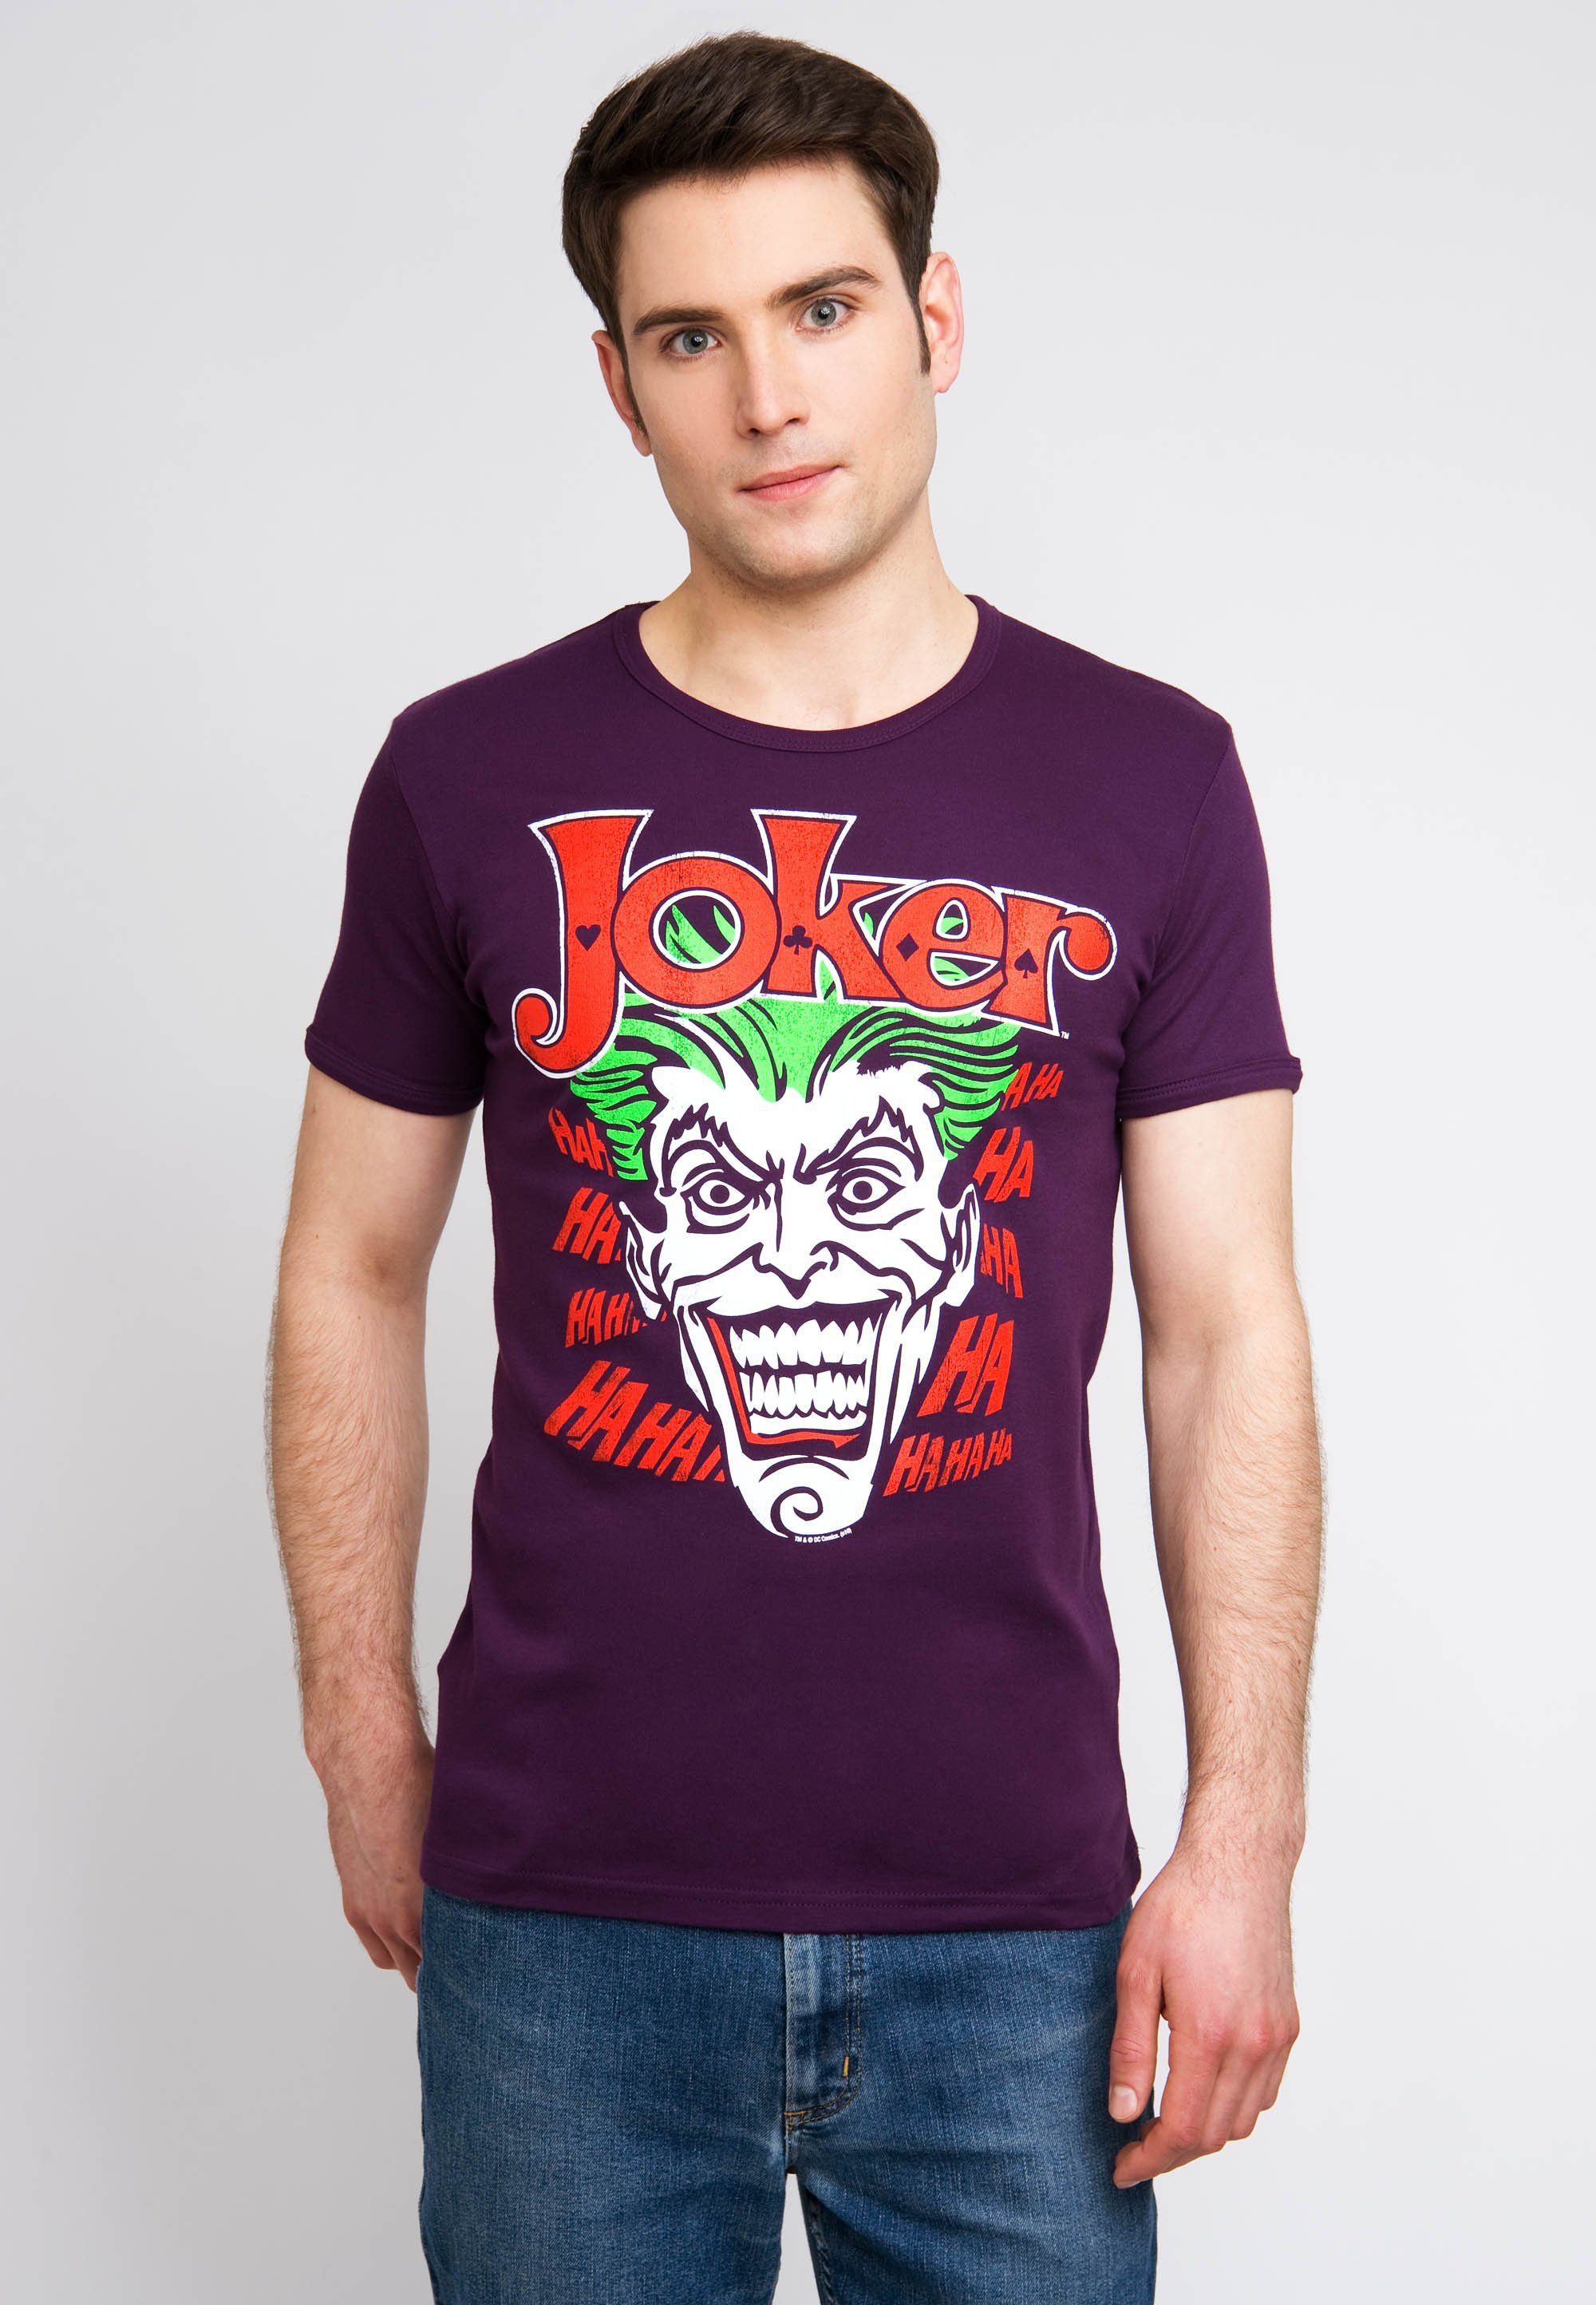 LOGOSHIRT T-Shirt Joker Batman mit kultigem Joker-Print bunt | T-Shirts